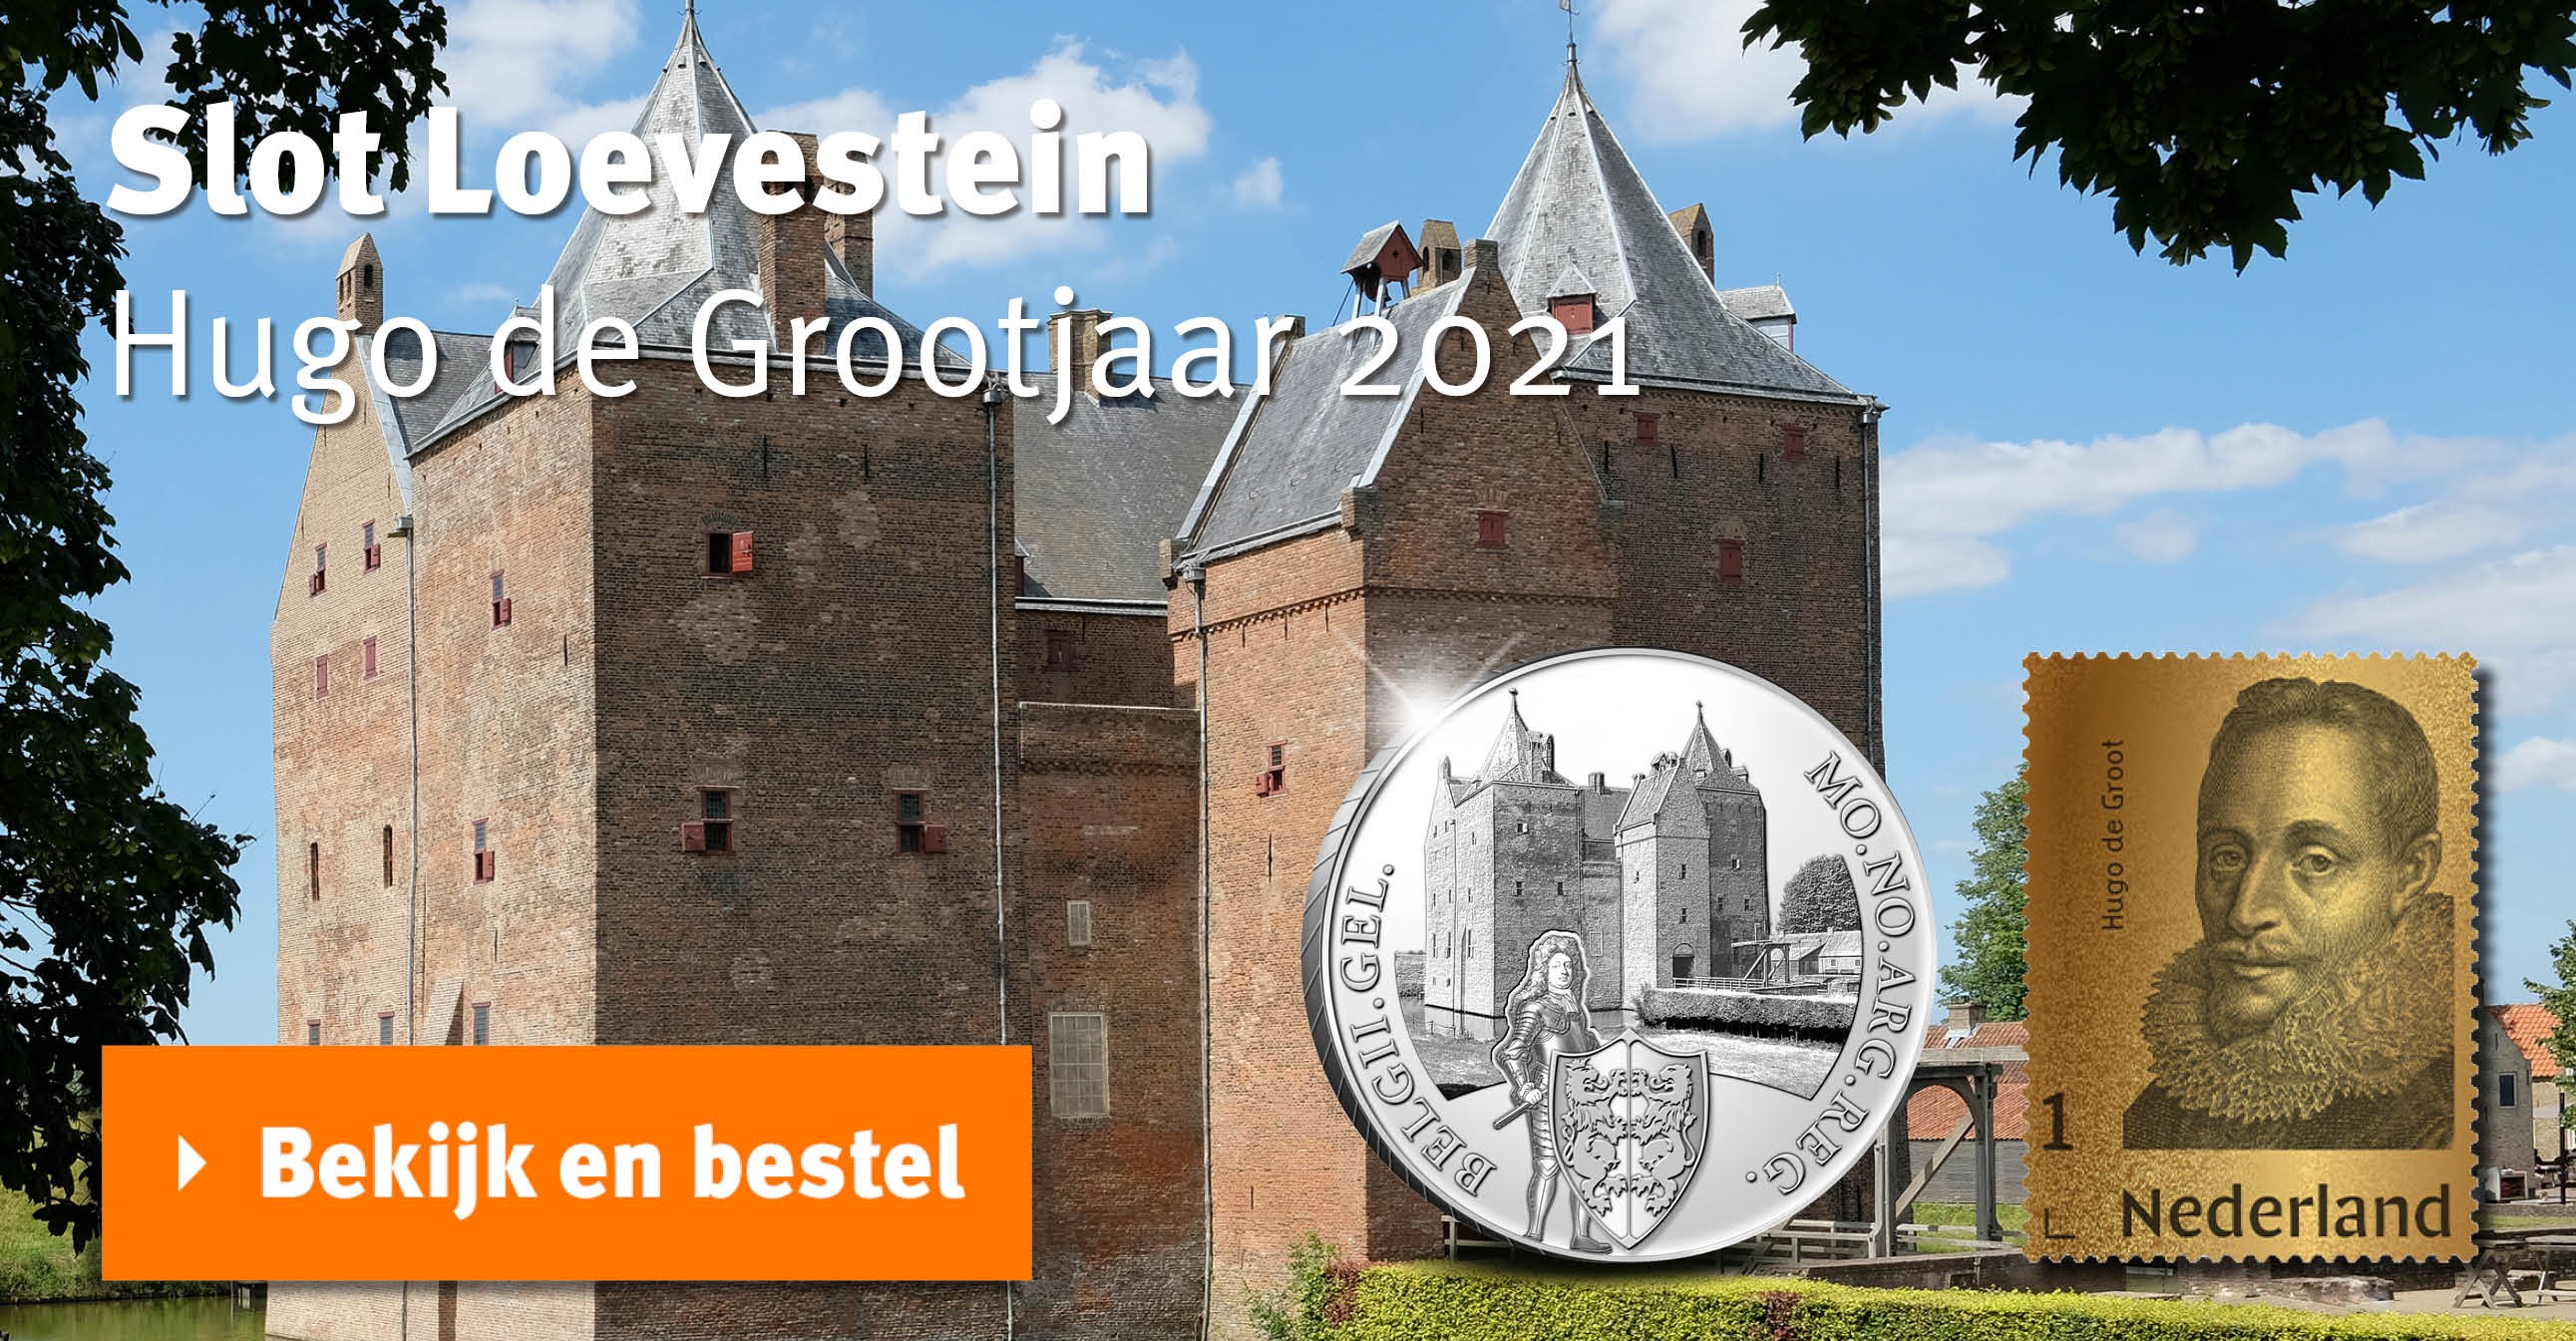 Bekijk en bestel: Zilveren Dukaat ‘Kasteel Loevenstein’ 2021 en Gouden Postzegel Hugo de Groot